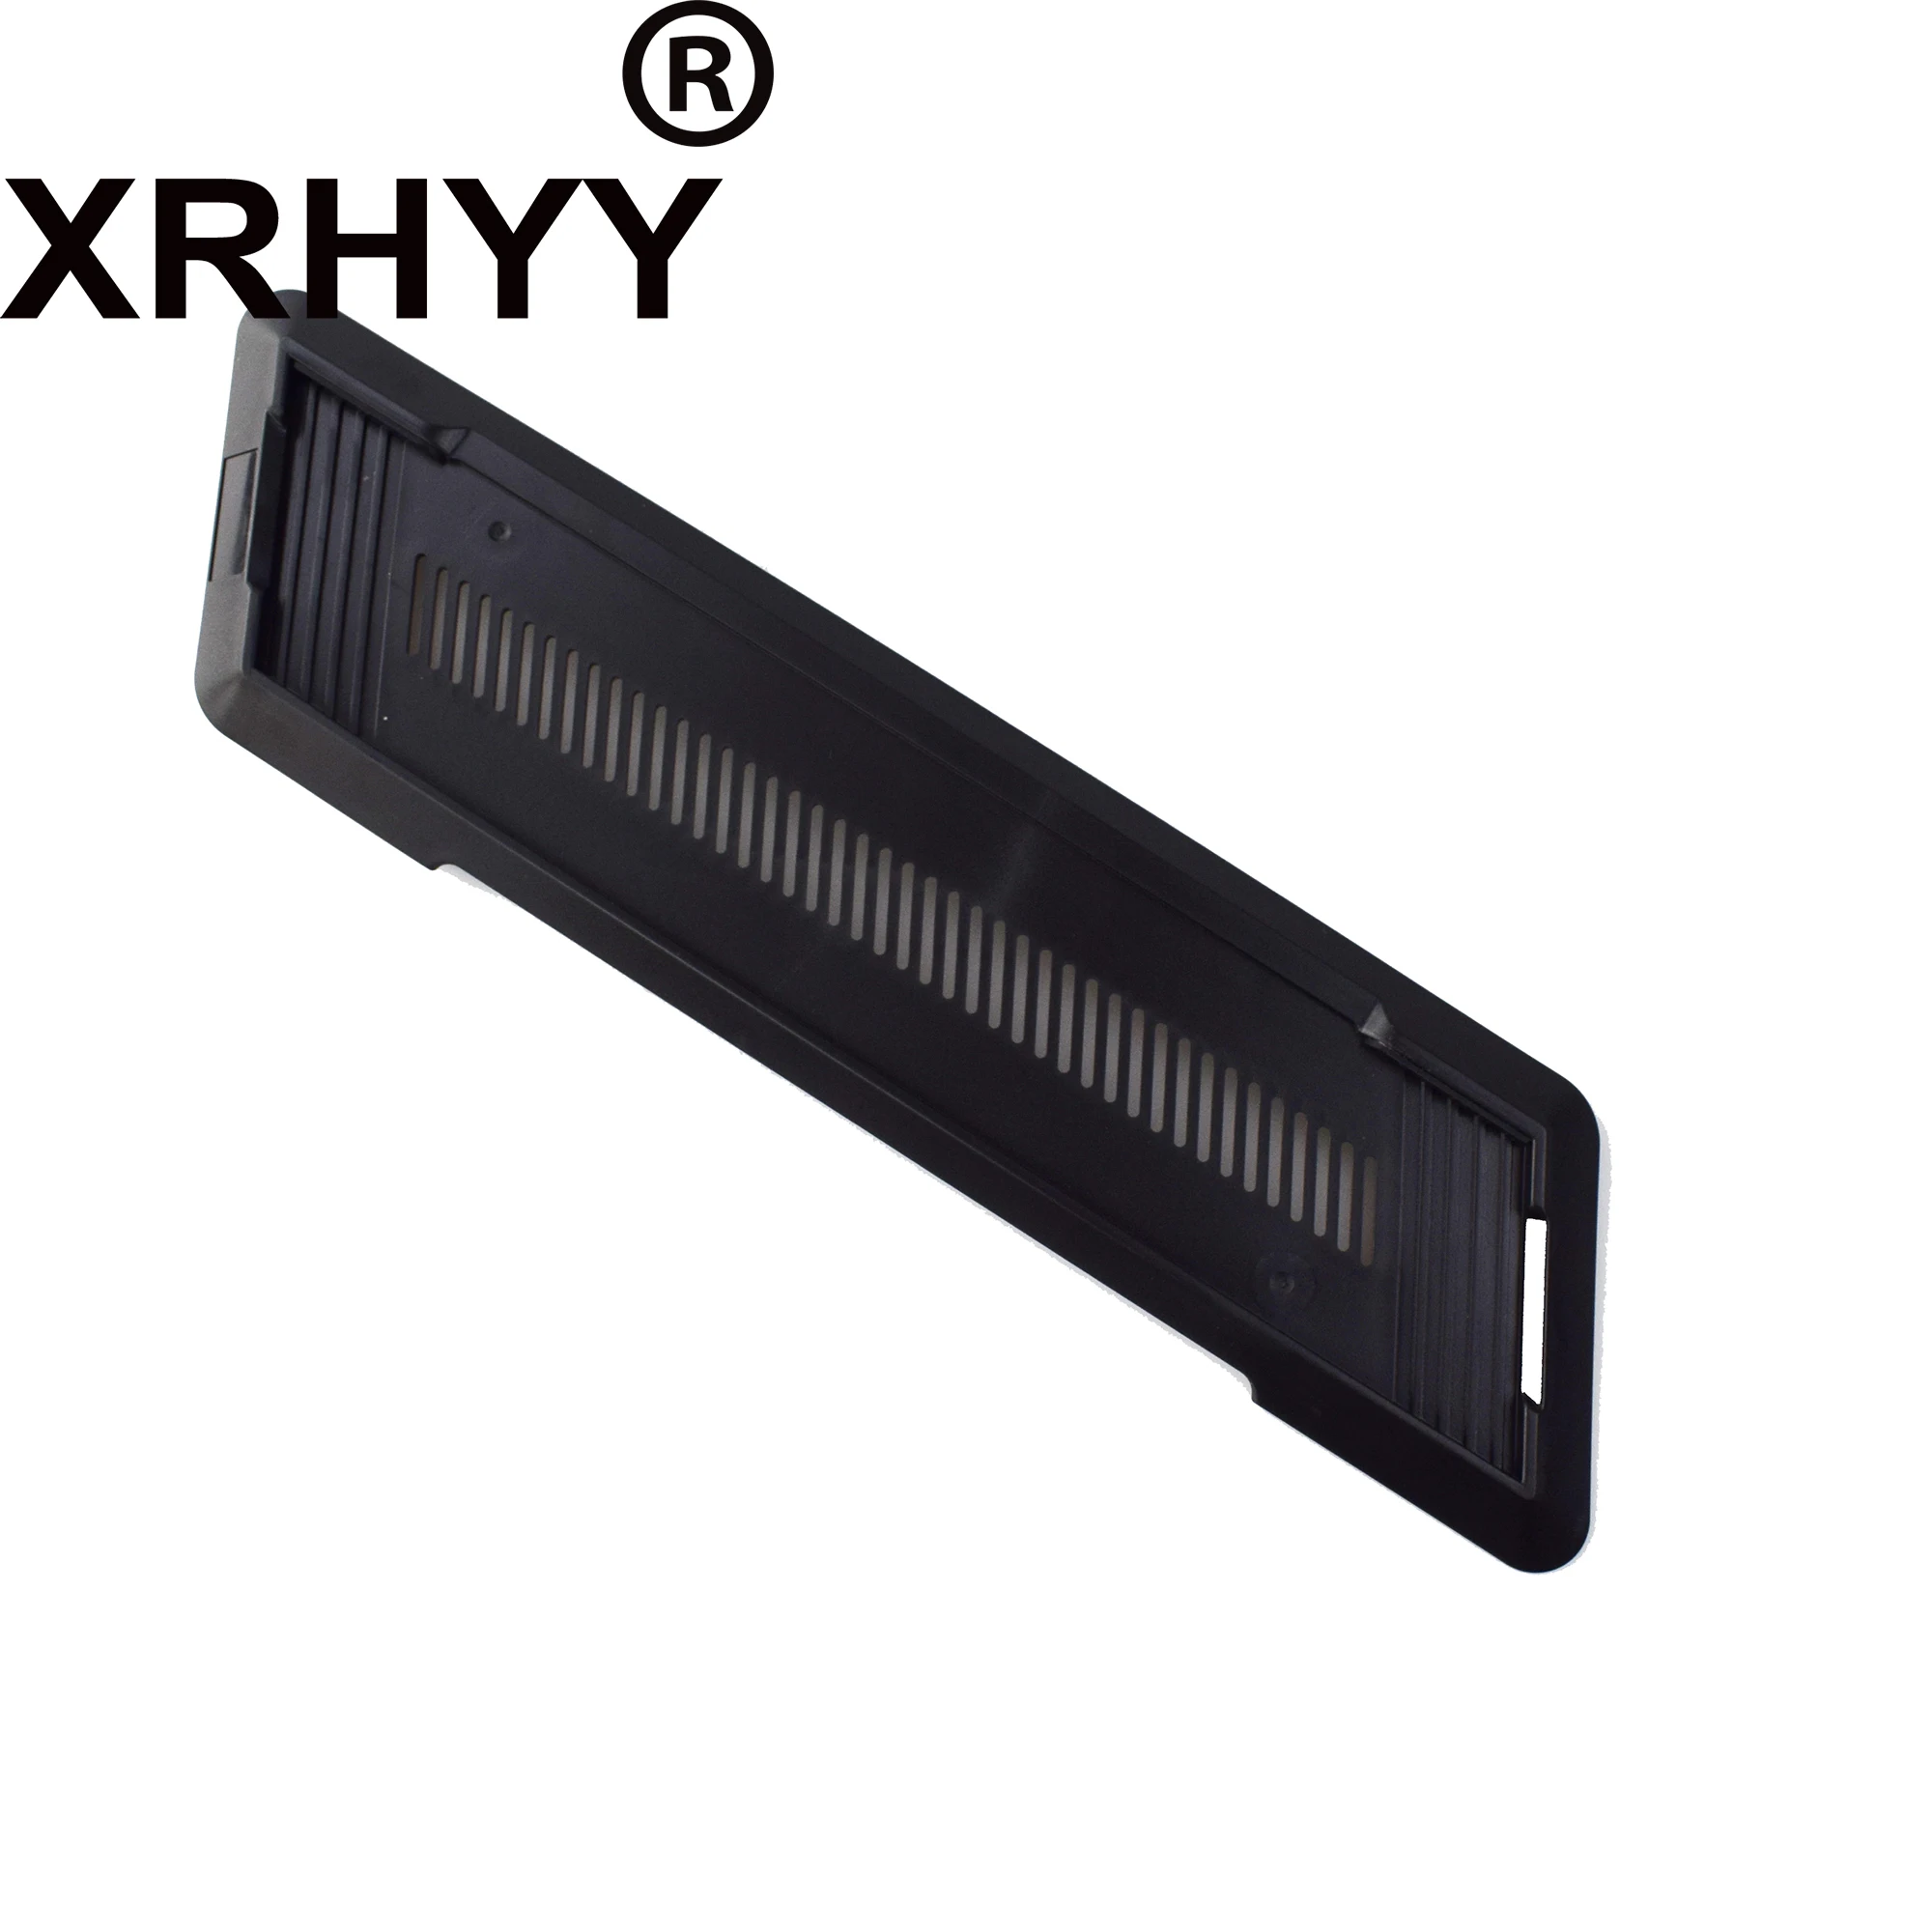 XRHYY soporte Vertical para consola Playstation PS4, color negro, PS4 Slim no apto para/Pro